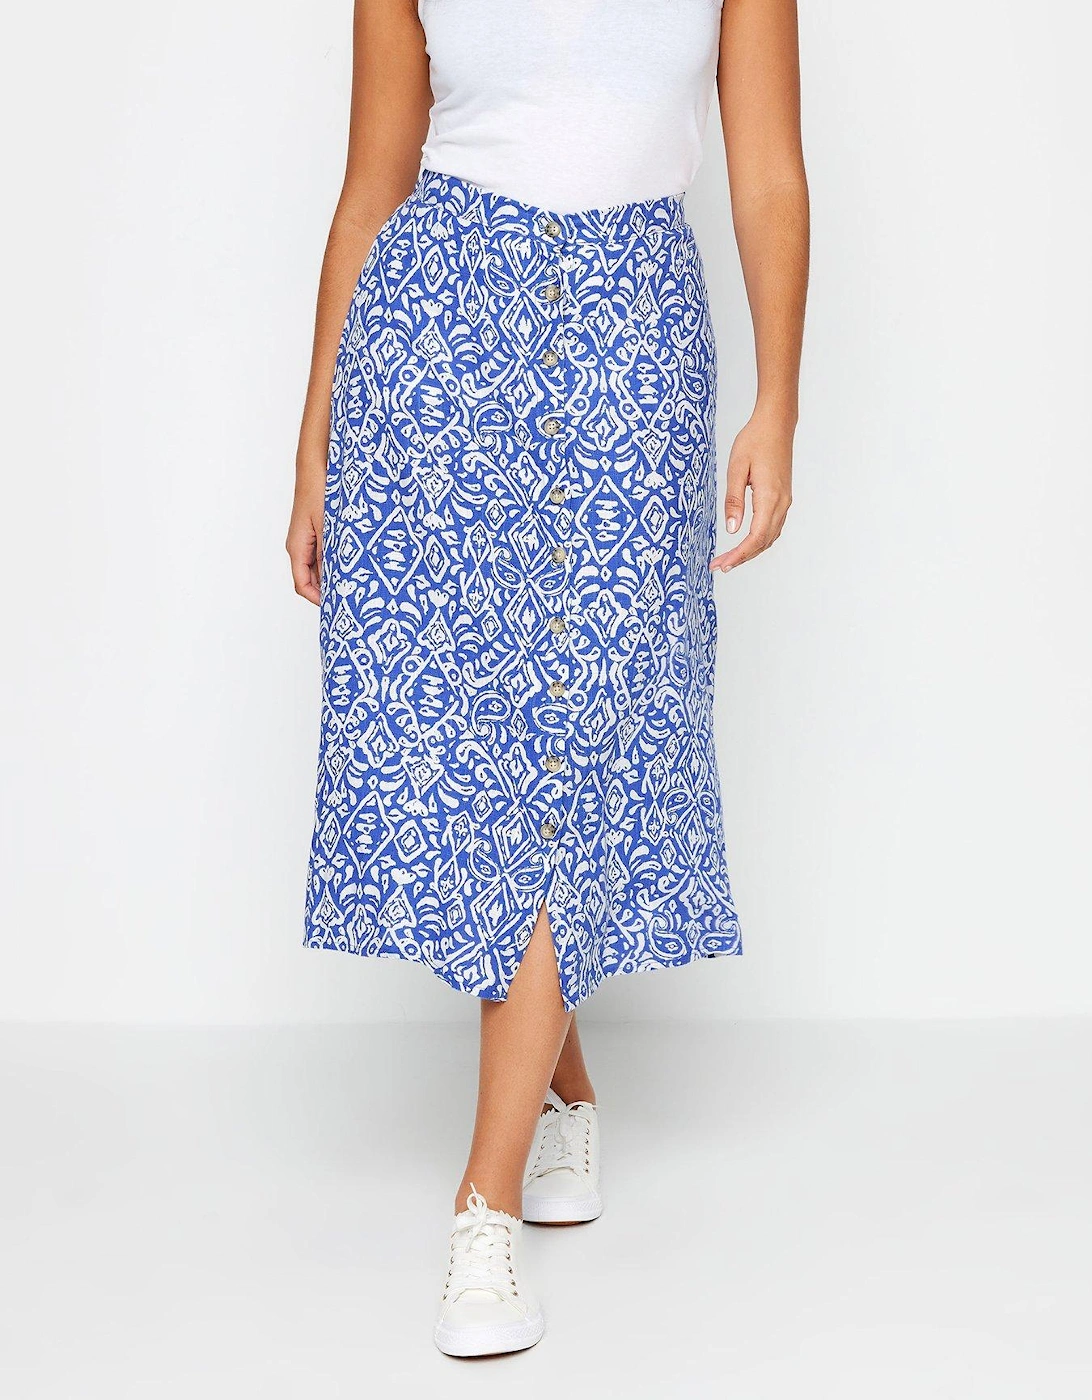 Blue And White Tile Print Linen Skirt, 2 of 1